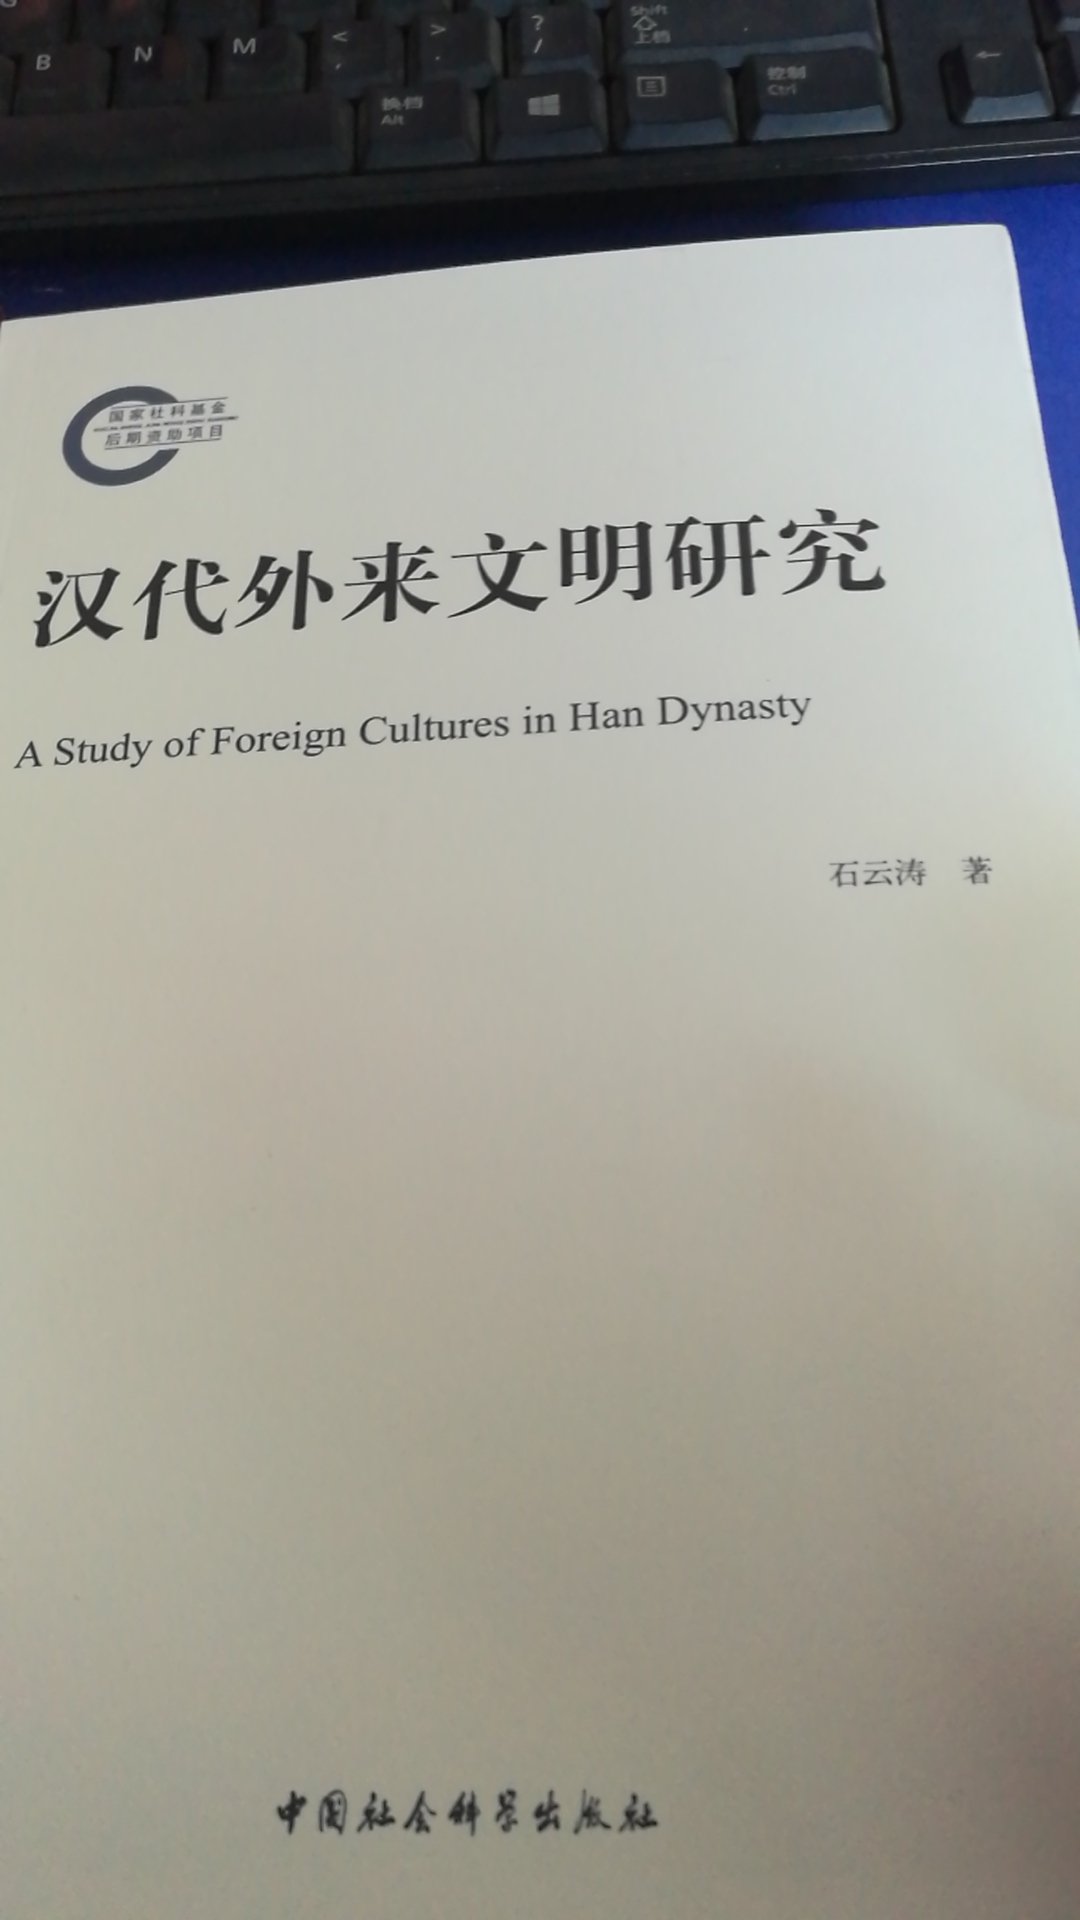 通过本书，可以了解汉代外来文明对我们文明的补充